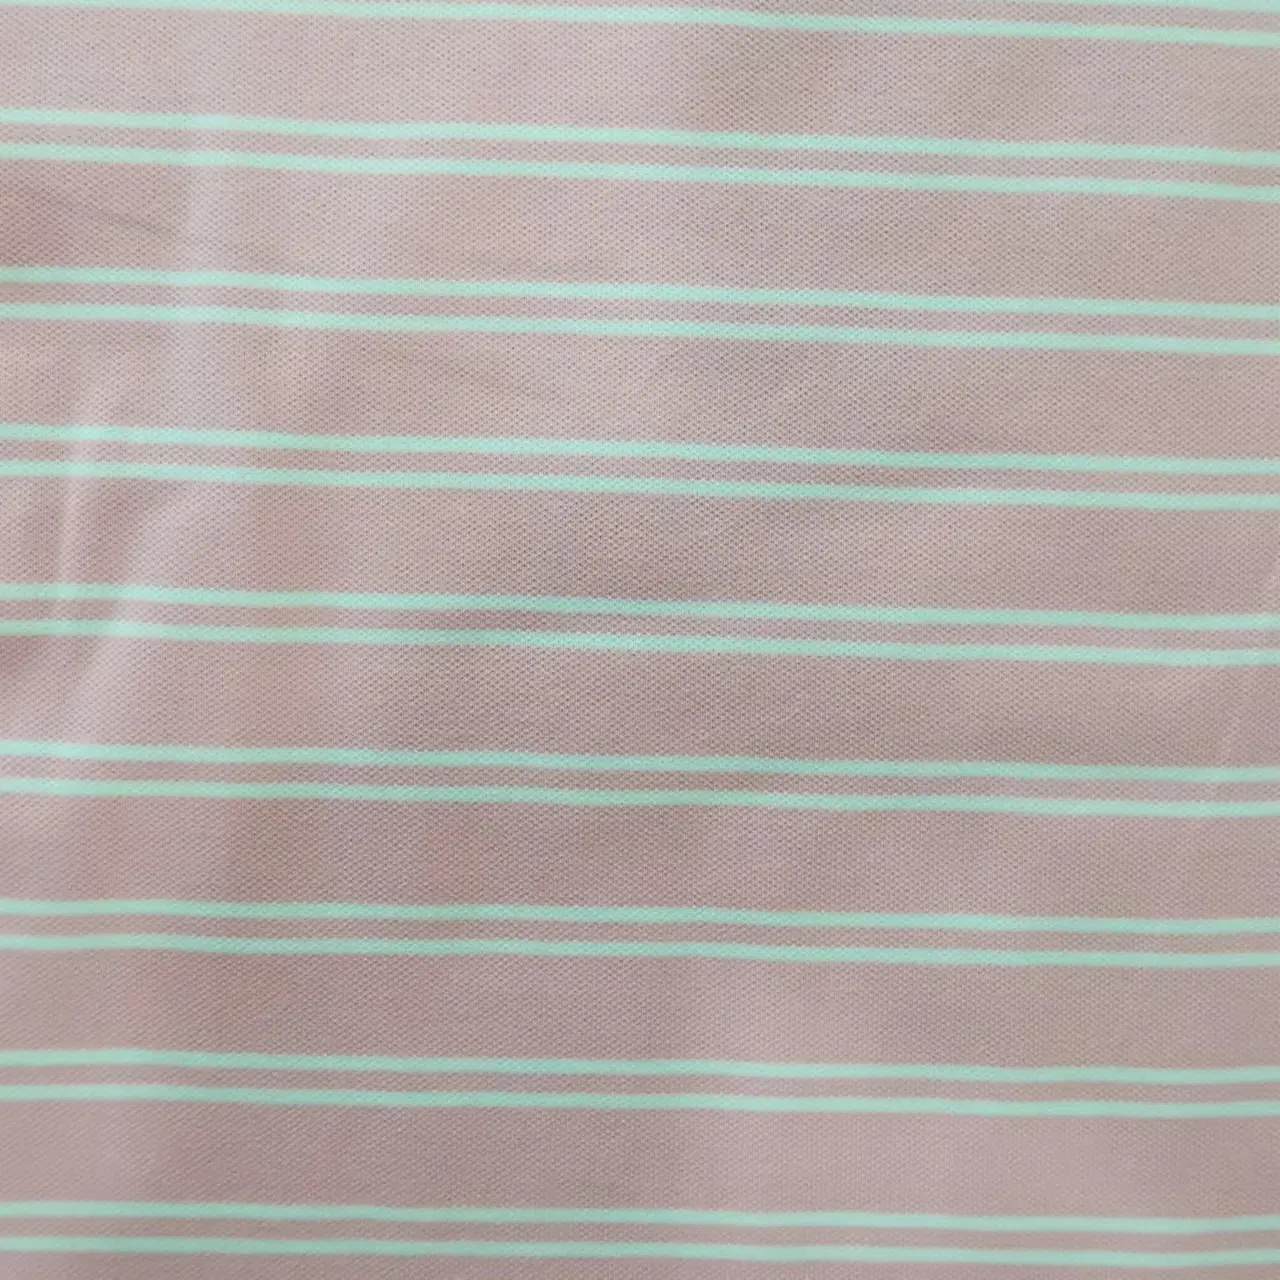 Горячая Распродажа 100% хлопок двойная трикотажная пряжа окрашенная в цветную полоску Пике Поло ткань для футболки поло